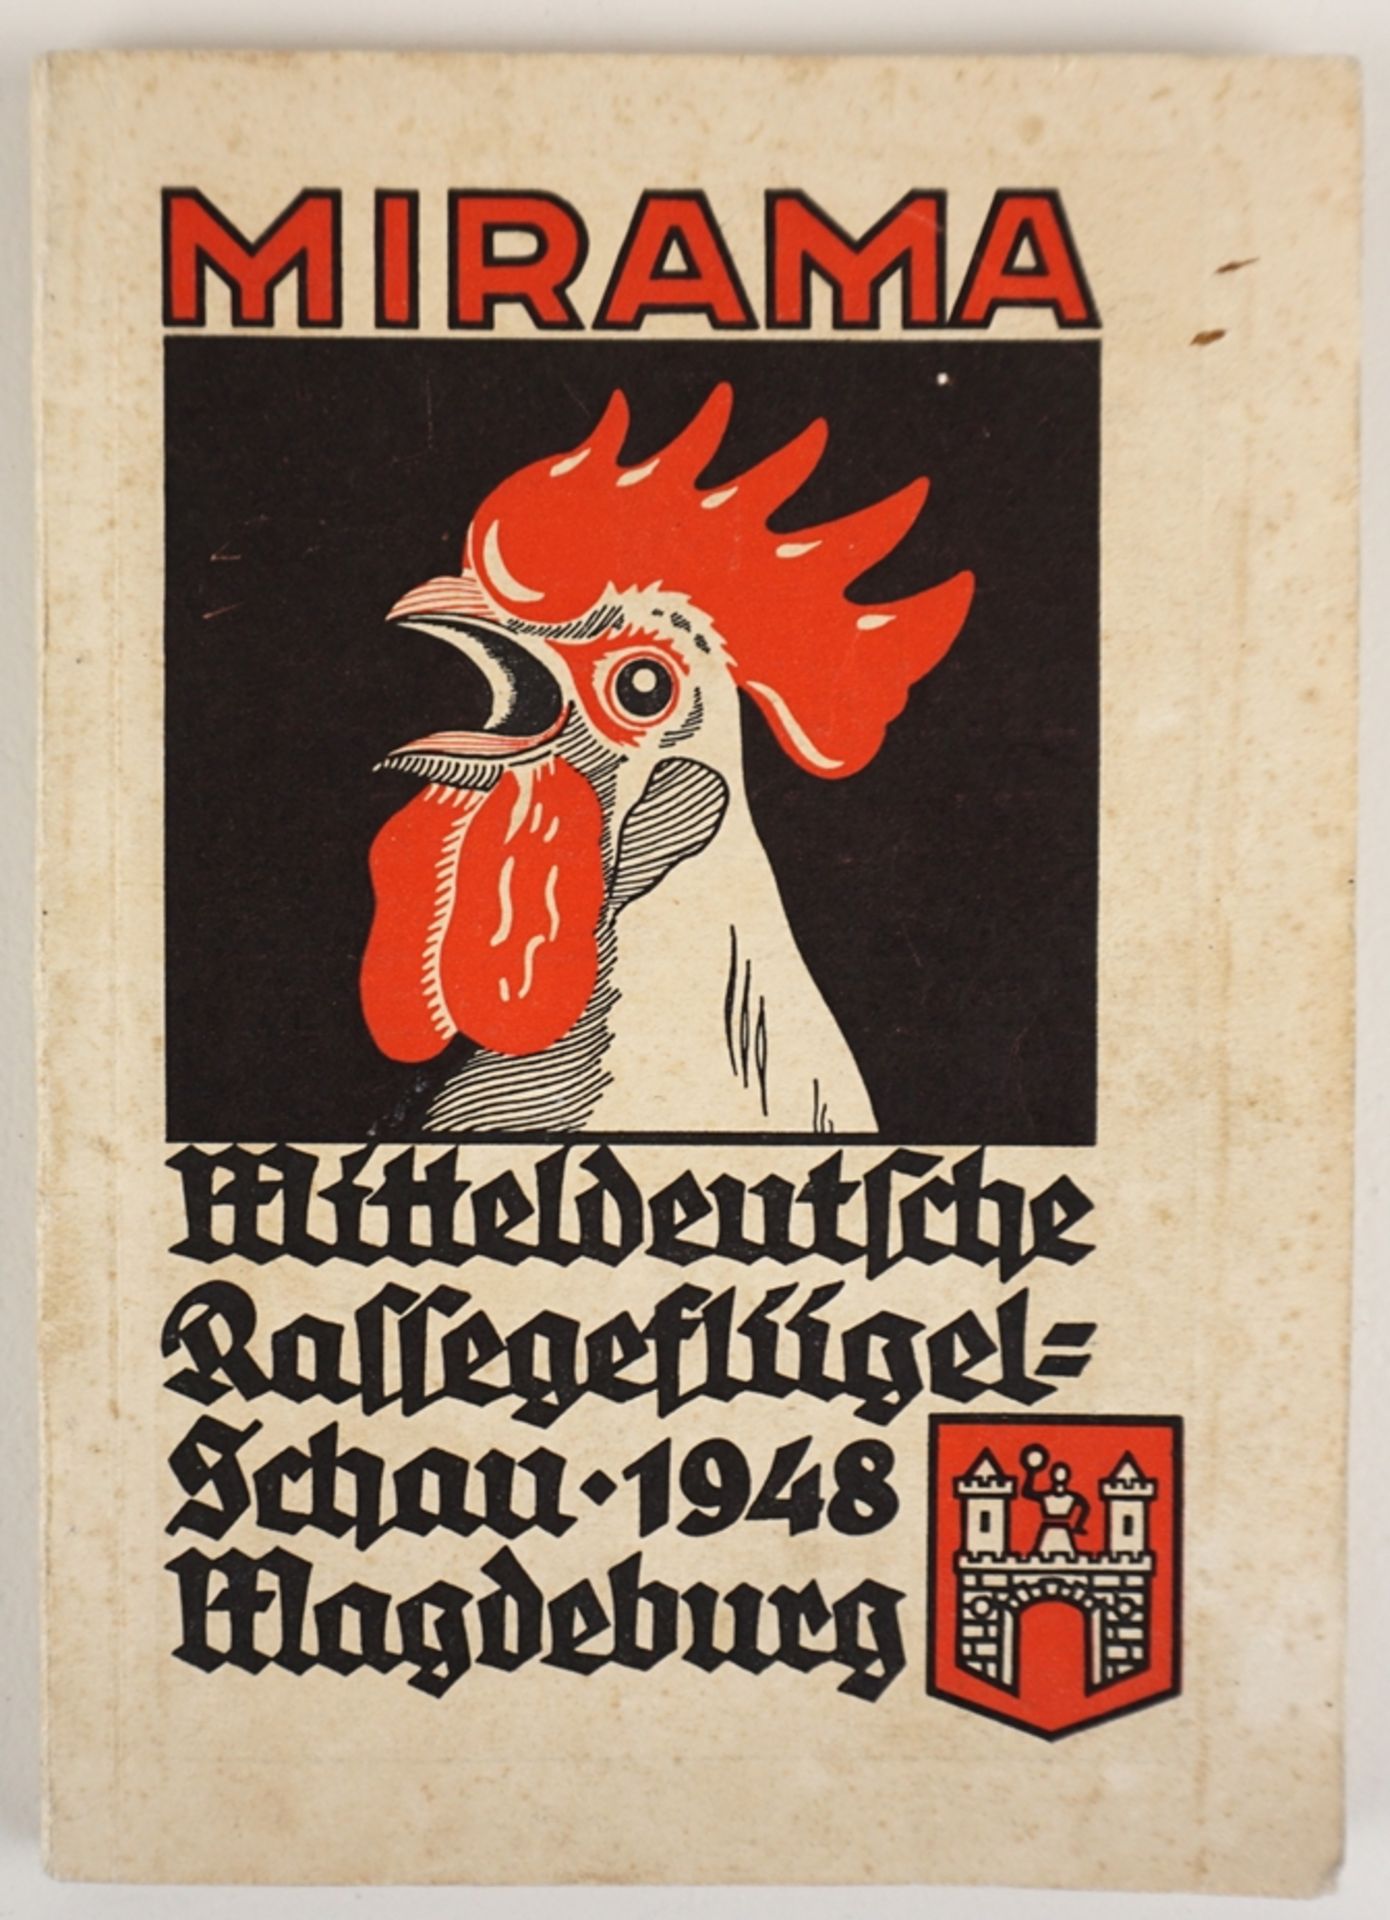 Urkunde "Ehren-Diplom" für Kanarienzüchter, 1913 und MIRAMA Katalog, 1948, Magdeburg - Image 2 of 2